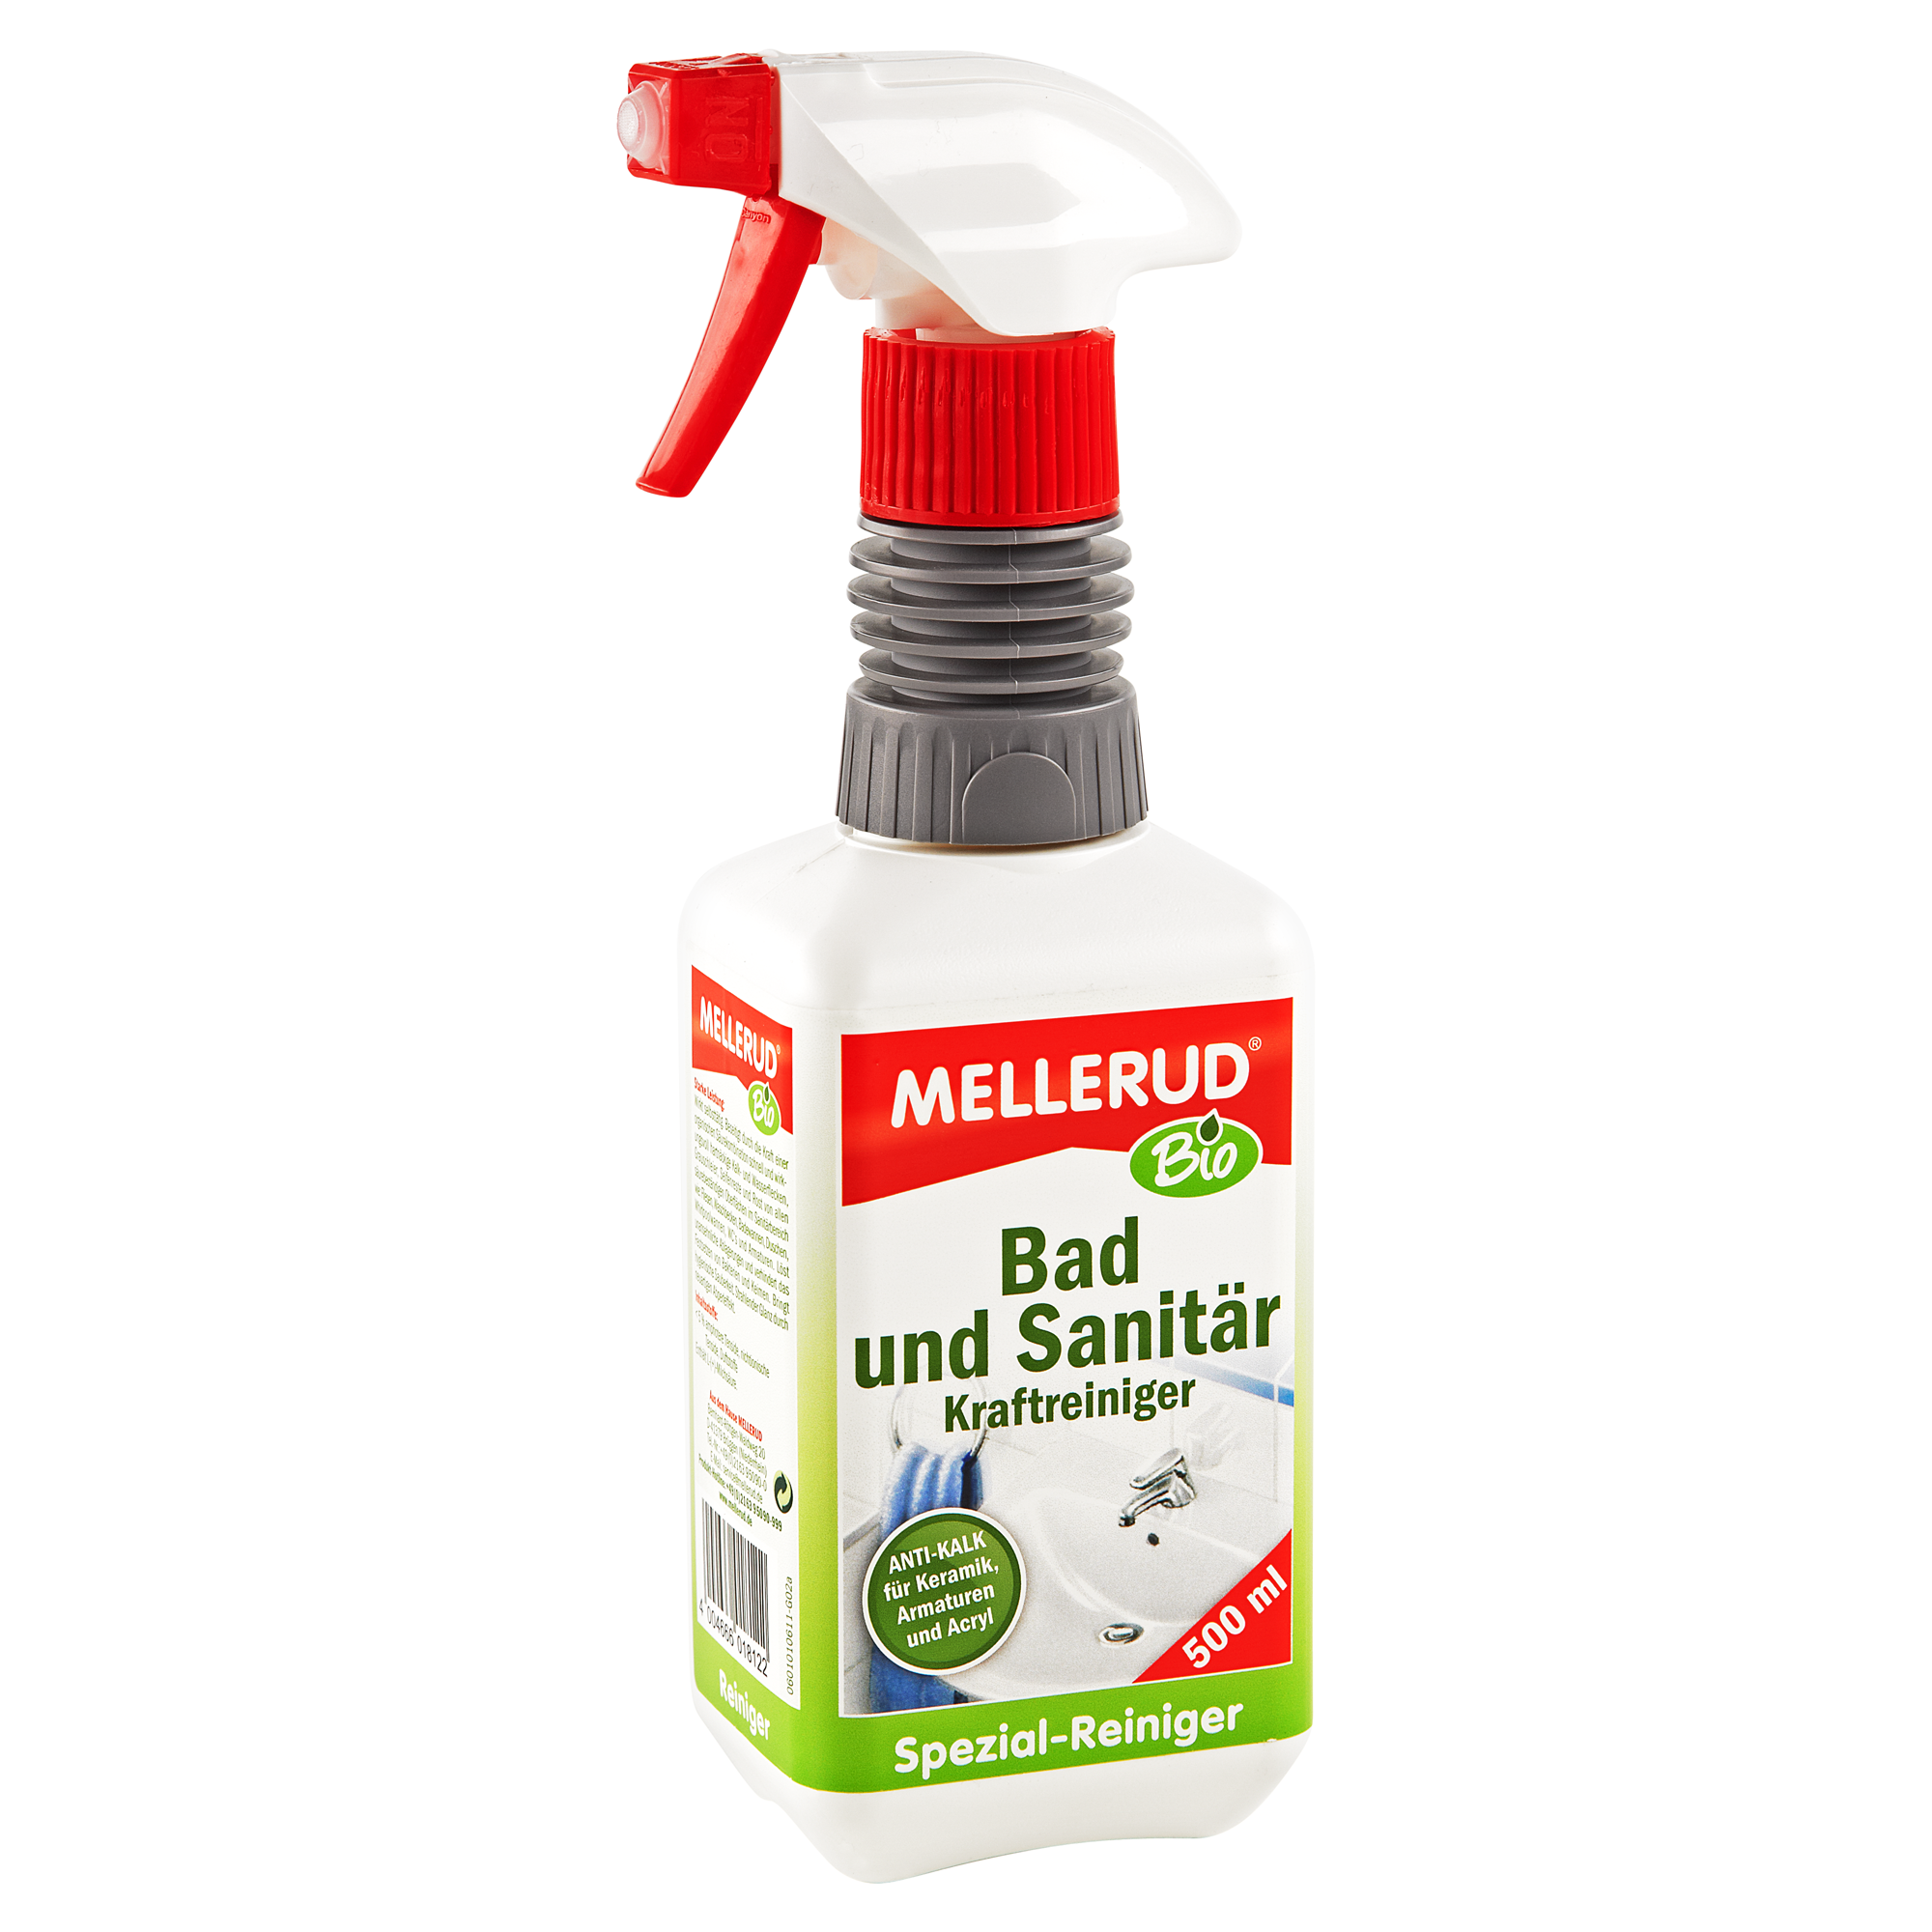 Bio-Bad- und Sanitärreiniger 500 ml + product picture